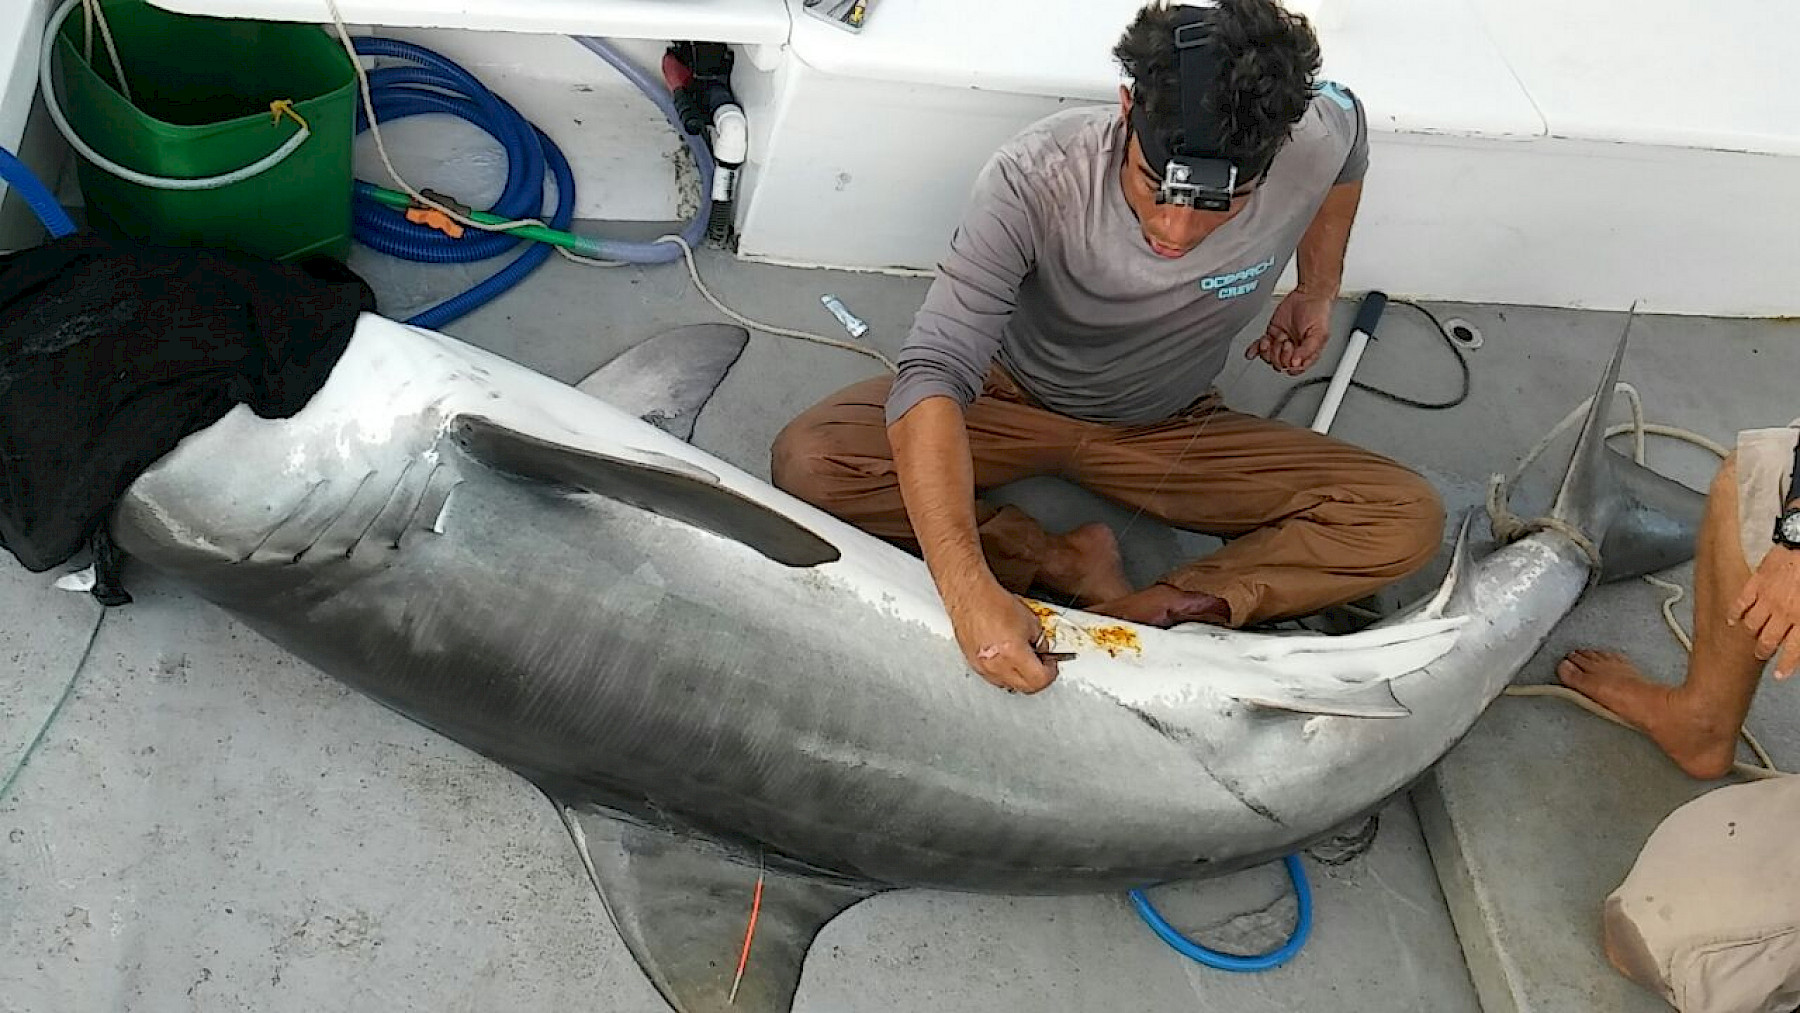 André Afonso a colocar dispositivo de monitorização no tubarão